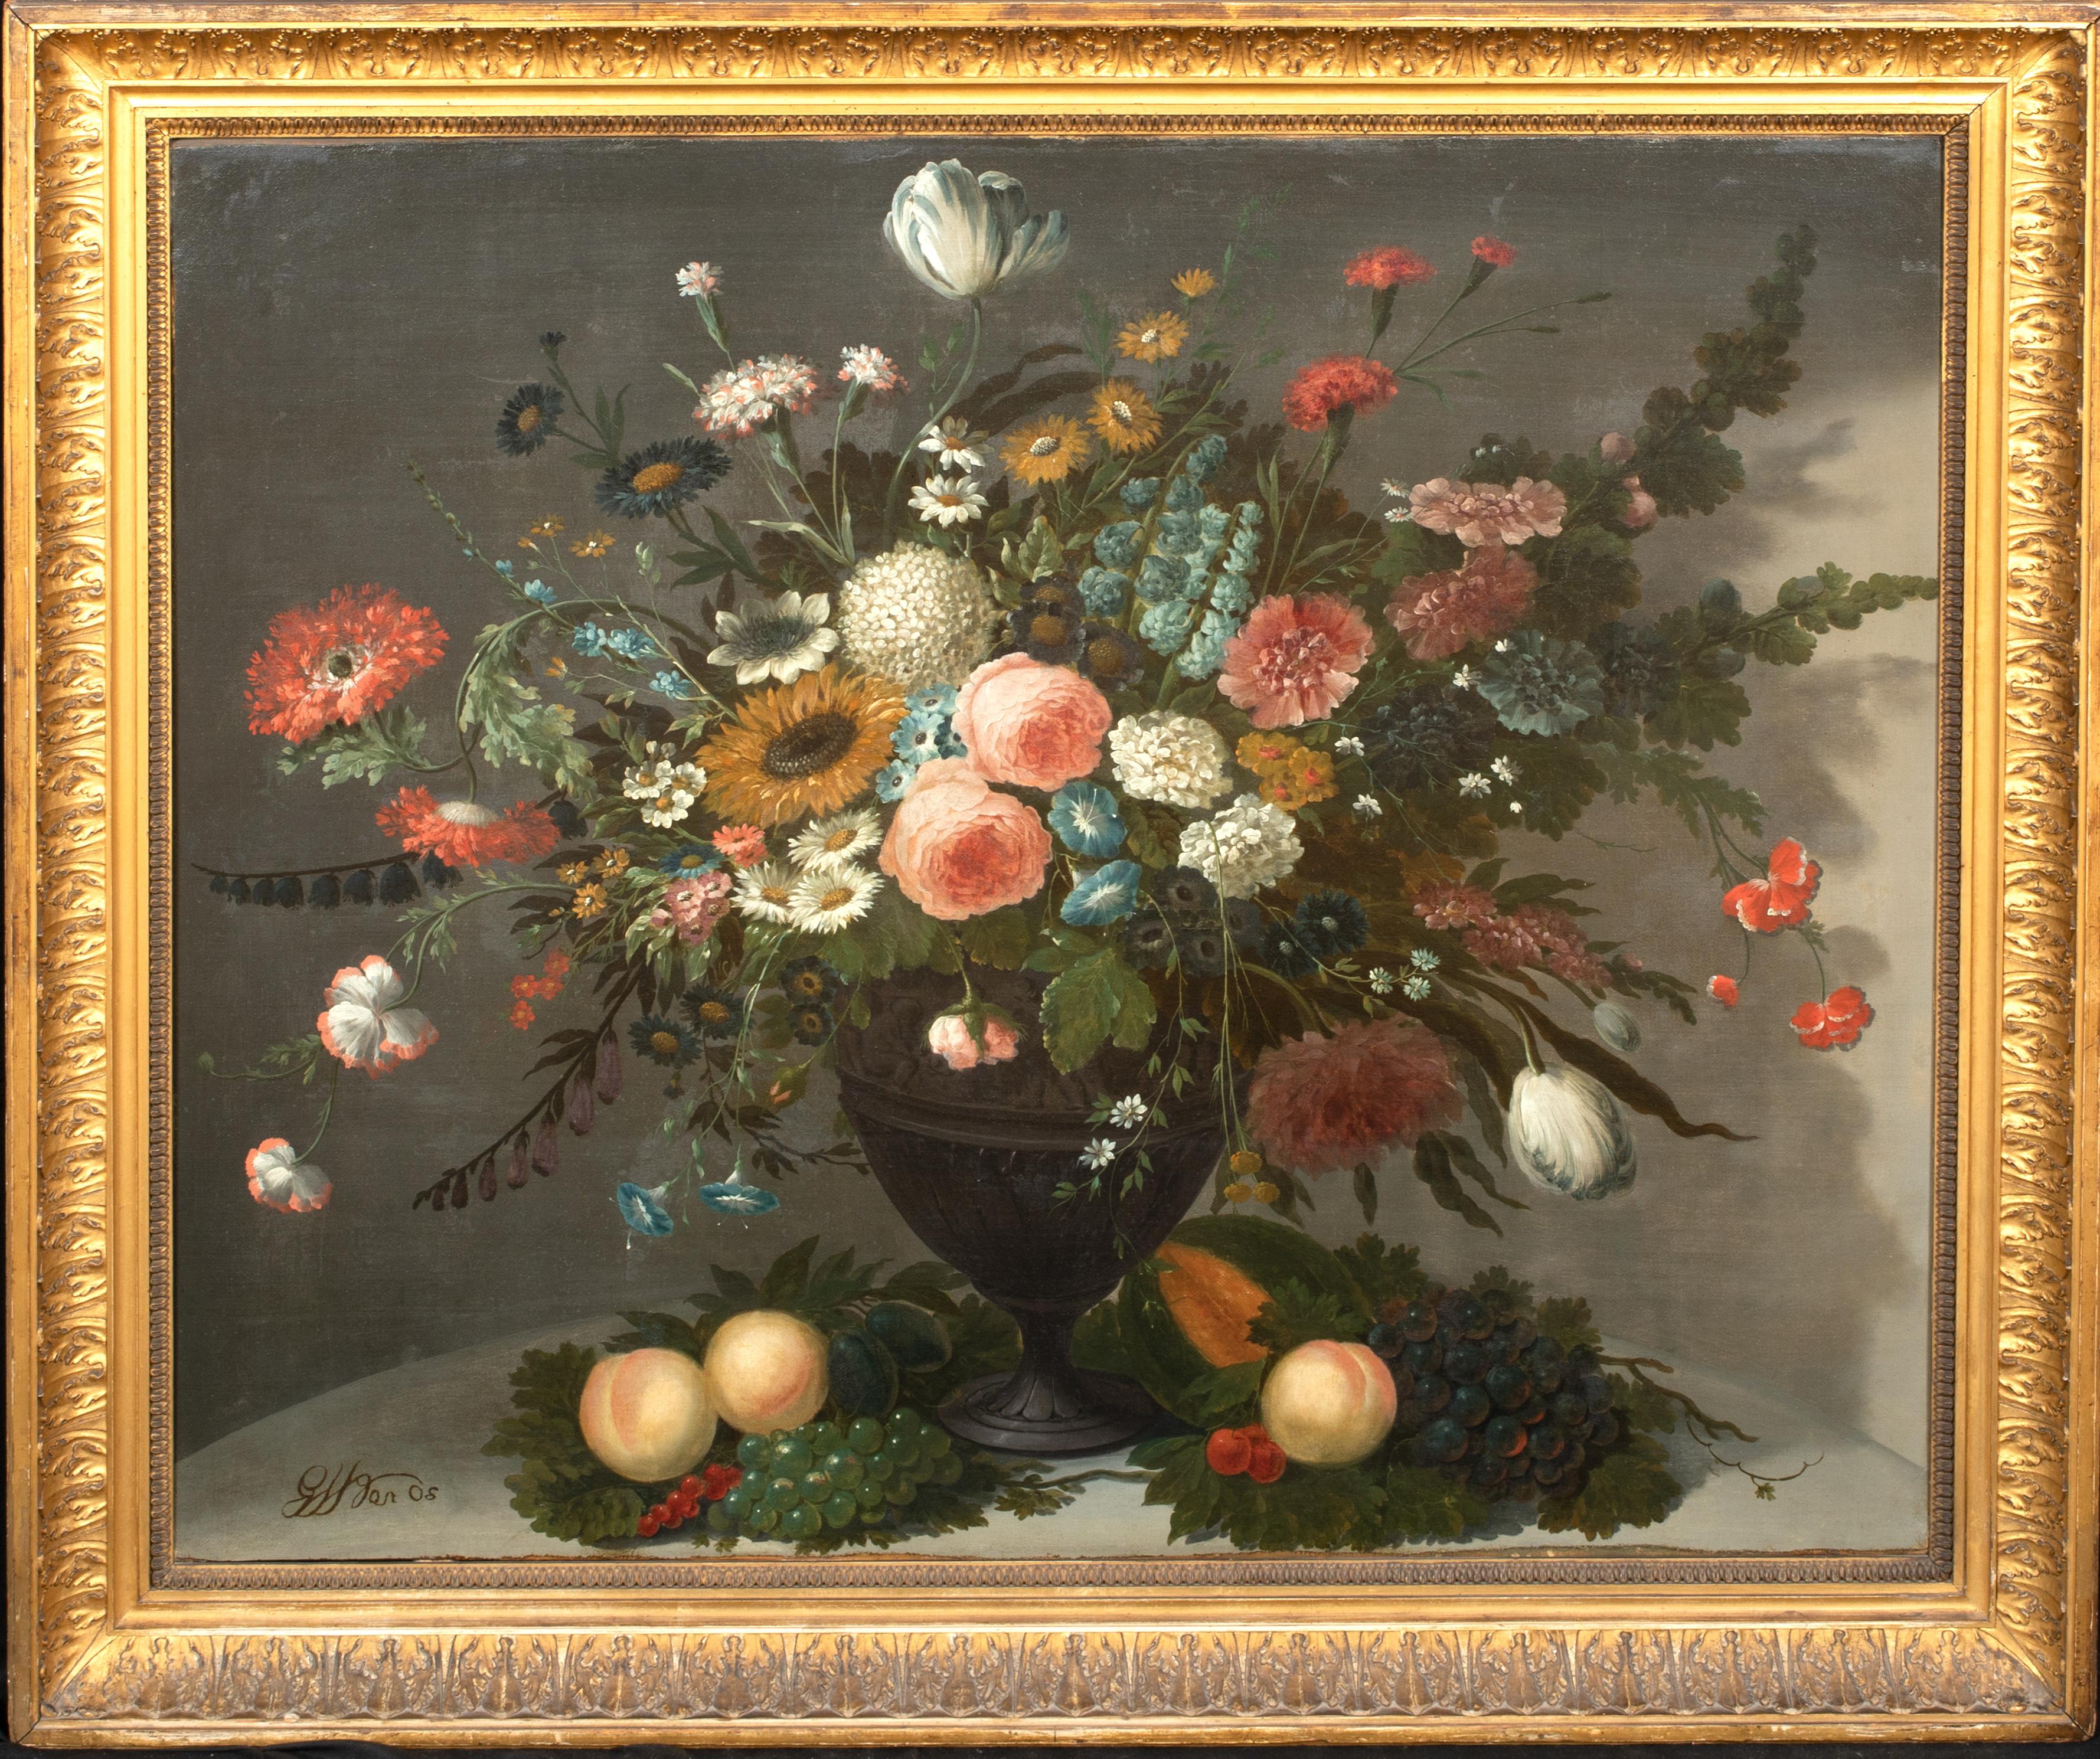 Blumenstillleben in einer Glasvase mit Rosen, Chrysanthemen und Rosen 17 

Großes holländisches Stillleben alter Meister aus dem 18. Jahrhundert mit verschiedenen Blumen in einer Vase, Öl auf Leinwand. Prächtige Studie verschiedener Blumen, darunter